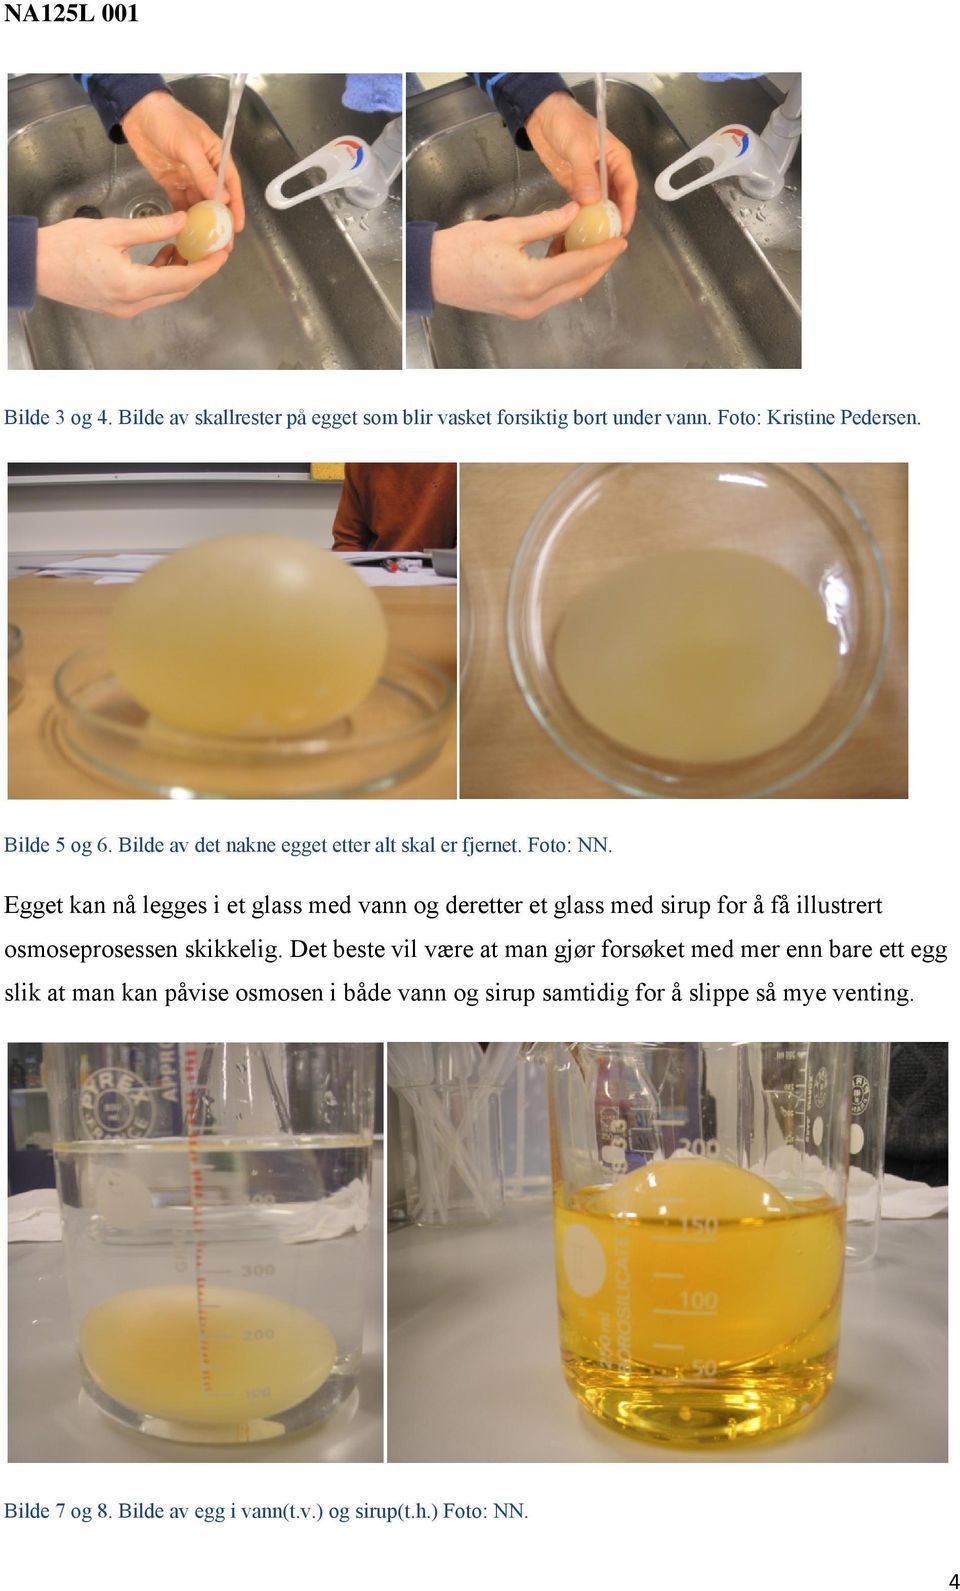 Egget kan nå legges i et glass med vann og deretter et glass med sirup for å få illustrert osmoseprosessen skikkelig.